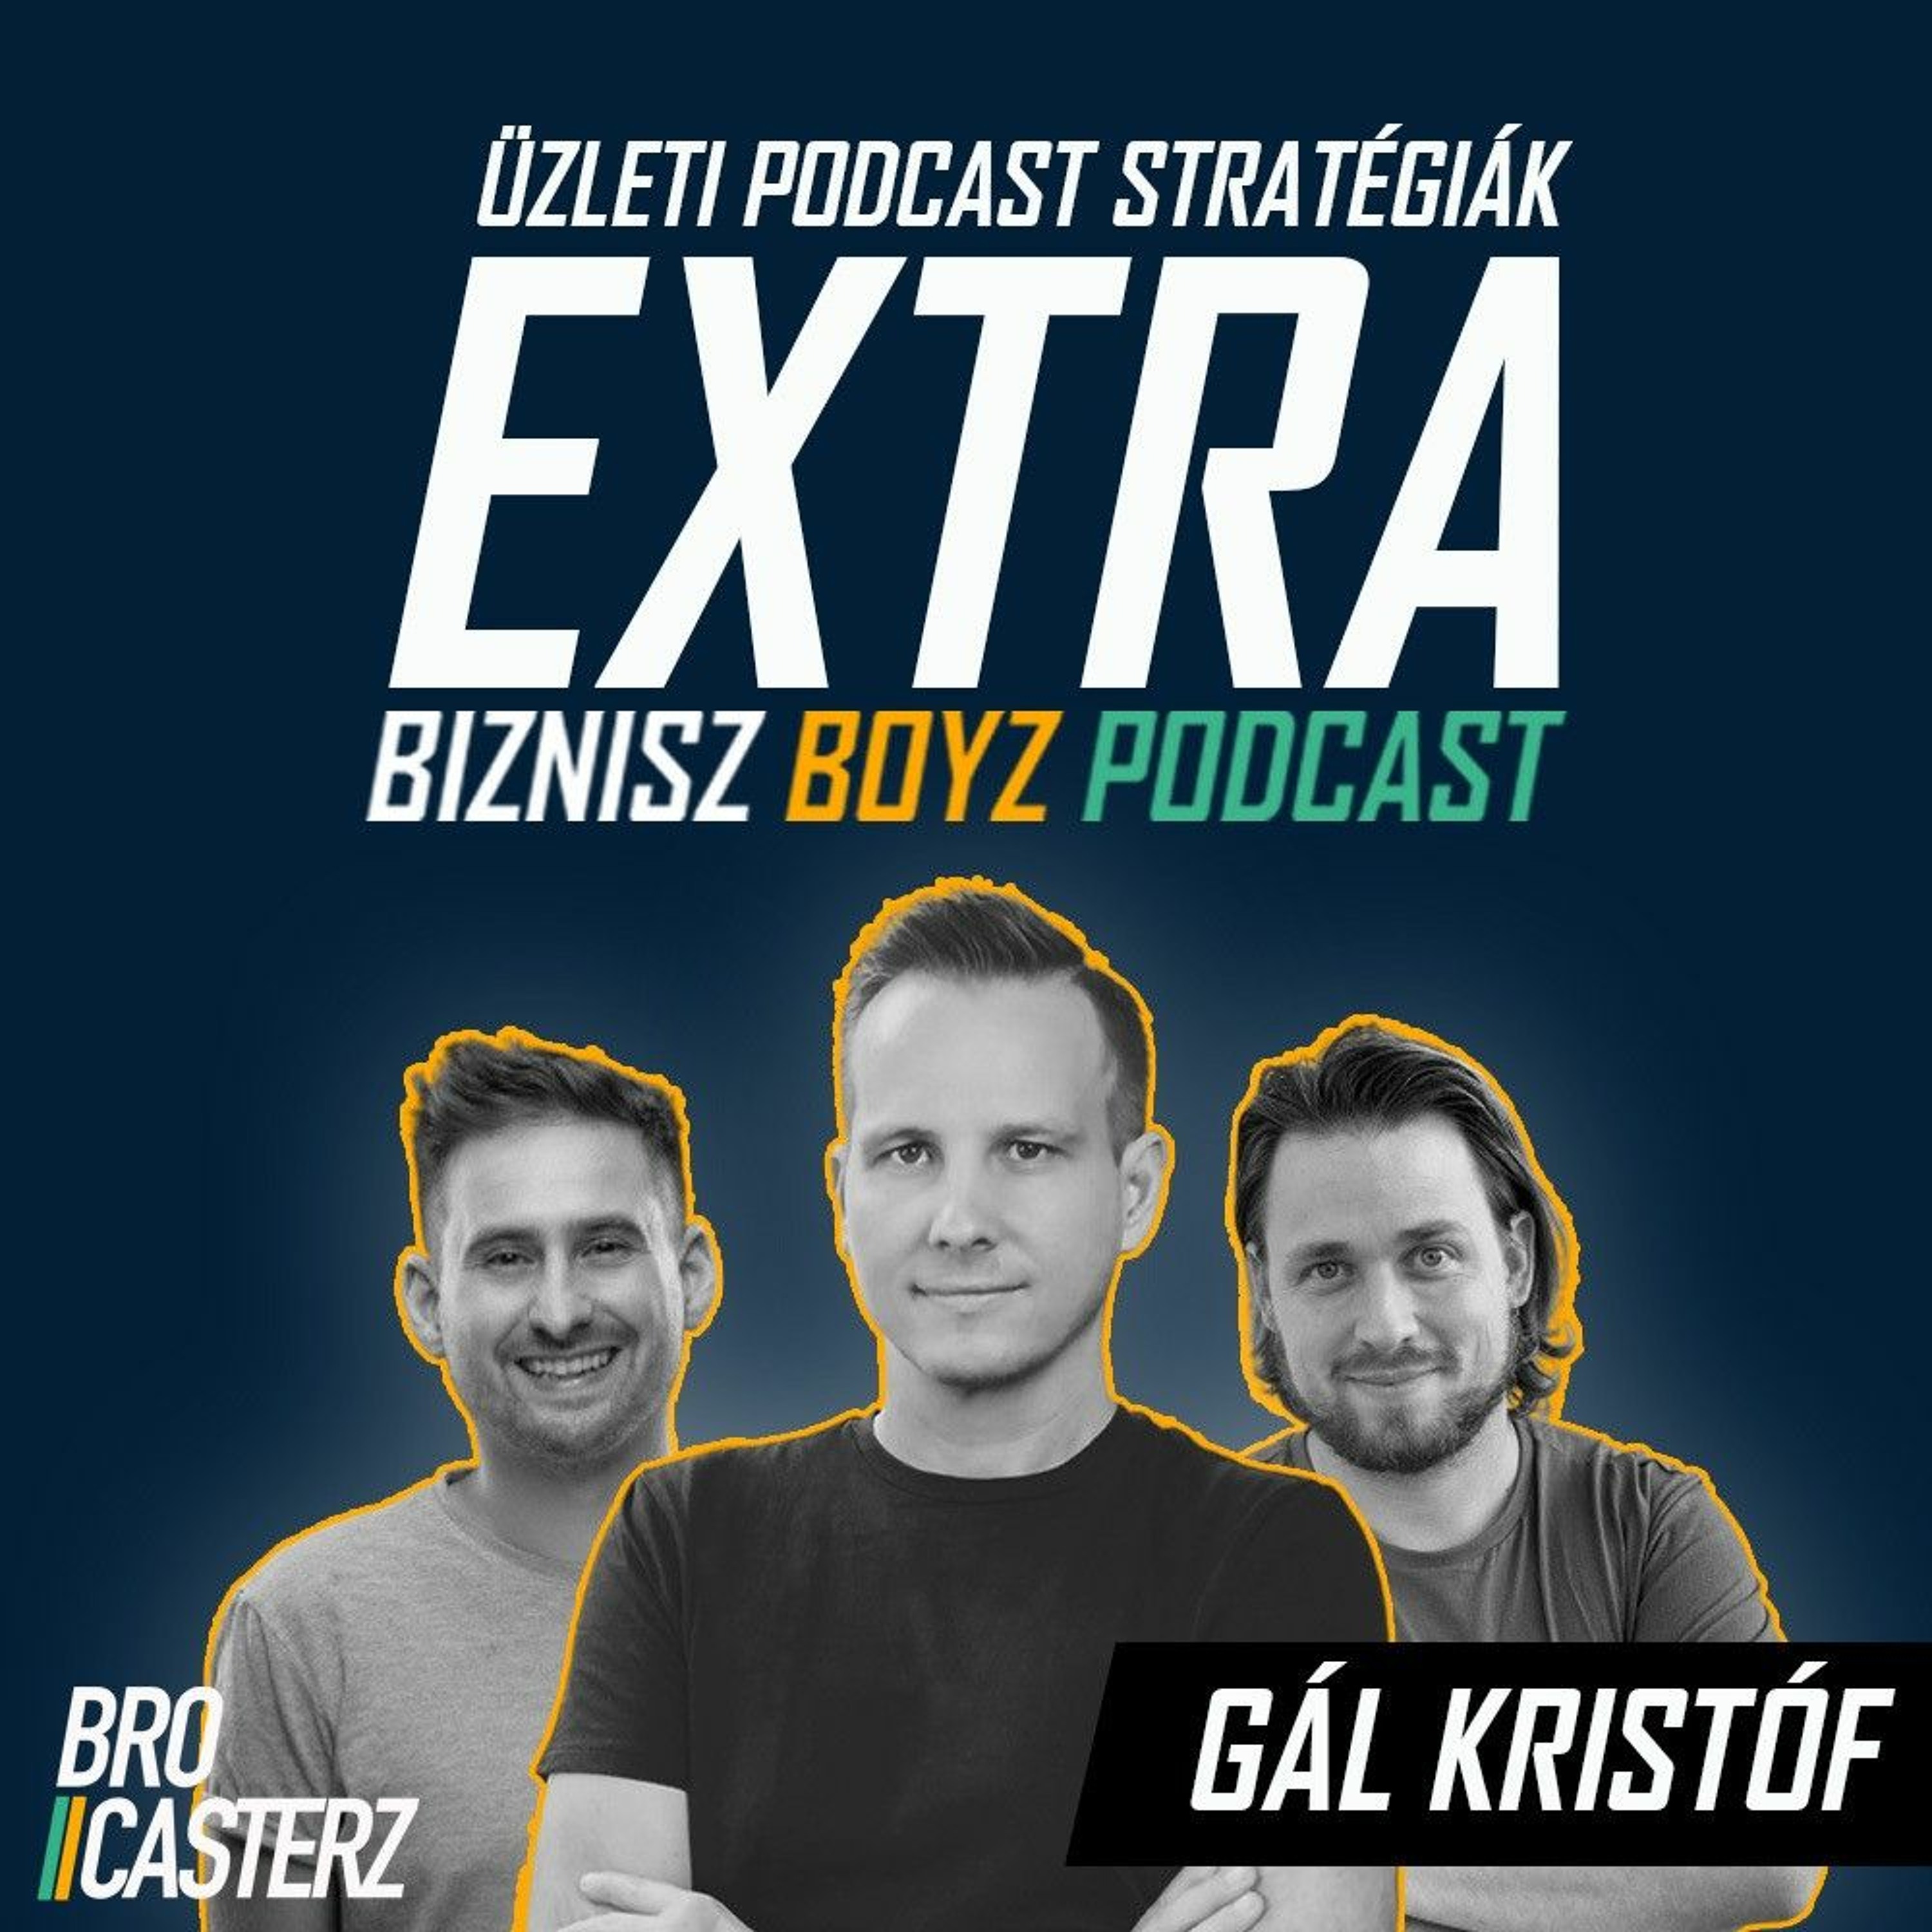 Extra: Üzleti Podcast Stratégiák - Vendég: Gál Kristóf - "A podcastok megtérülése vállalkozóként"